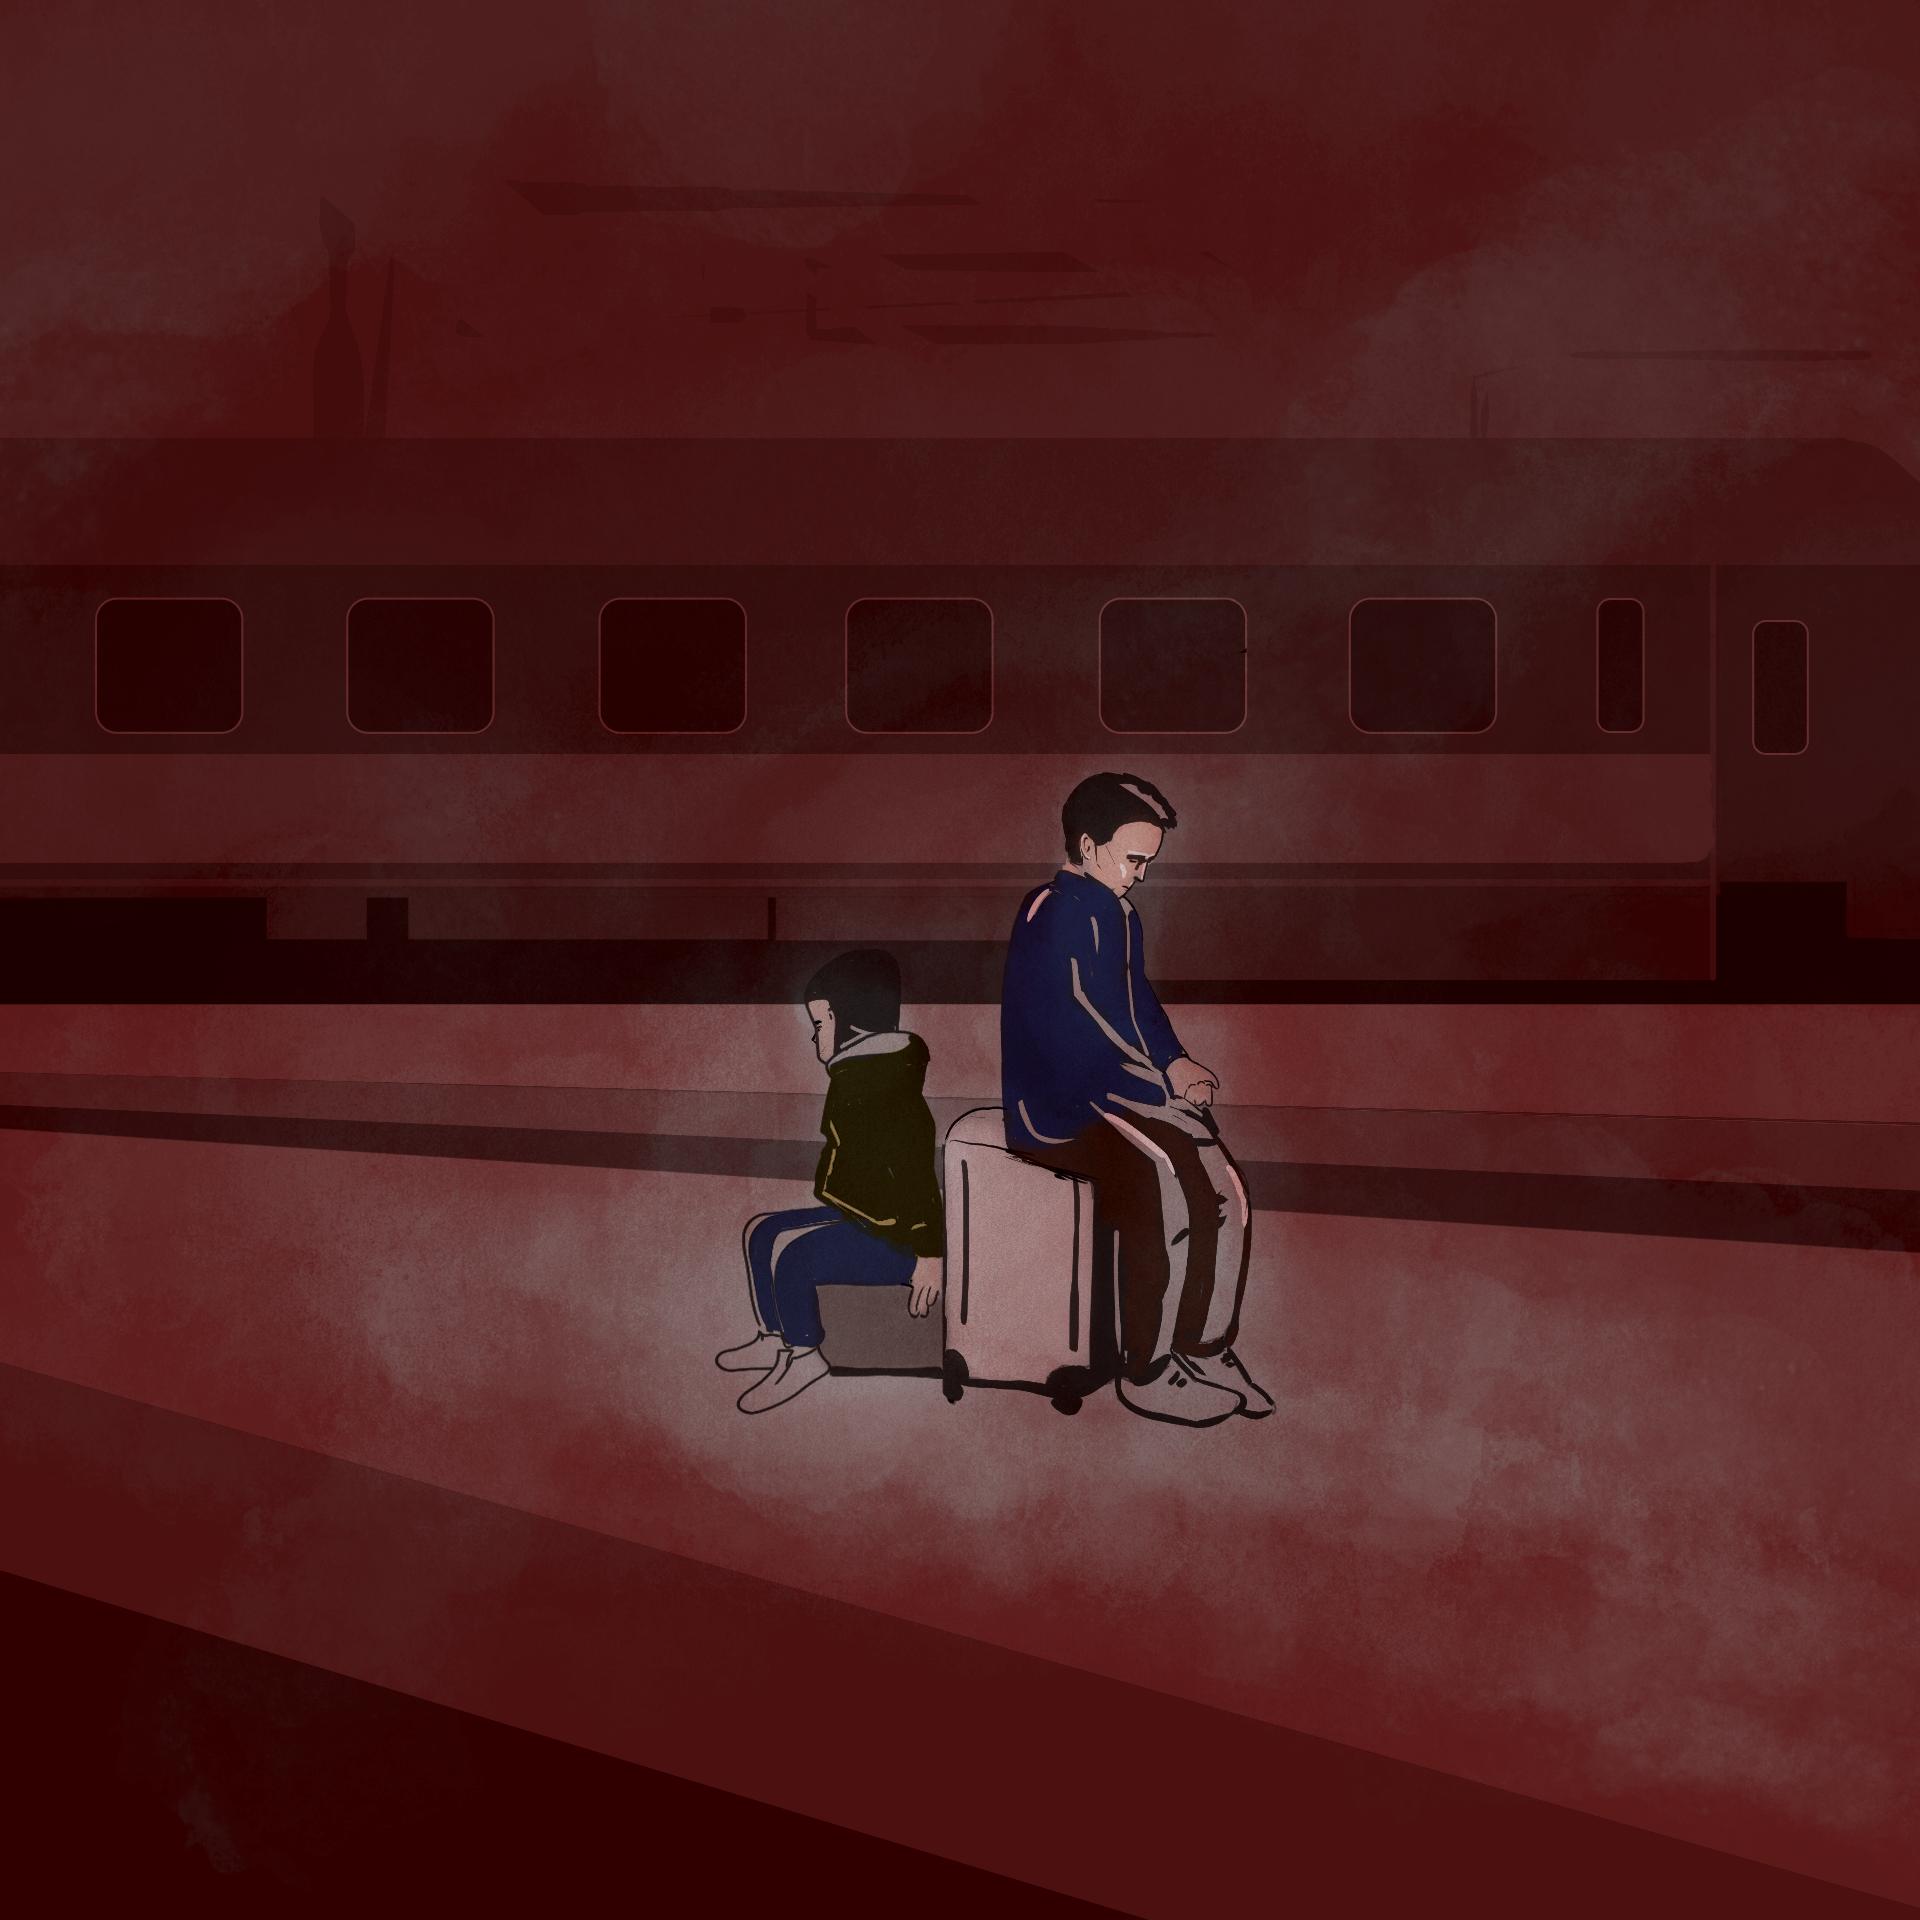 Ilustracja przedstawia dwójkę chłopców – nastolatka i kilkulatka – siedzących na walizkach na peronie kolejowym